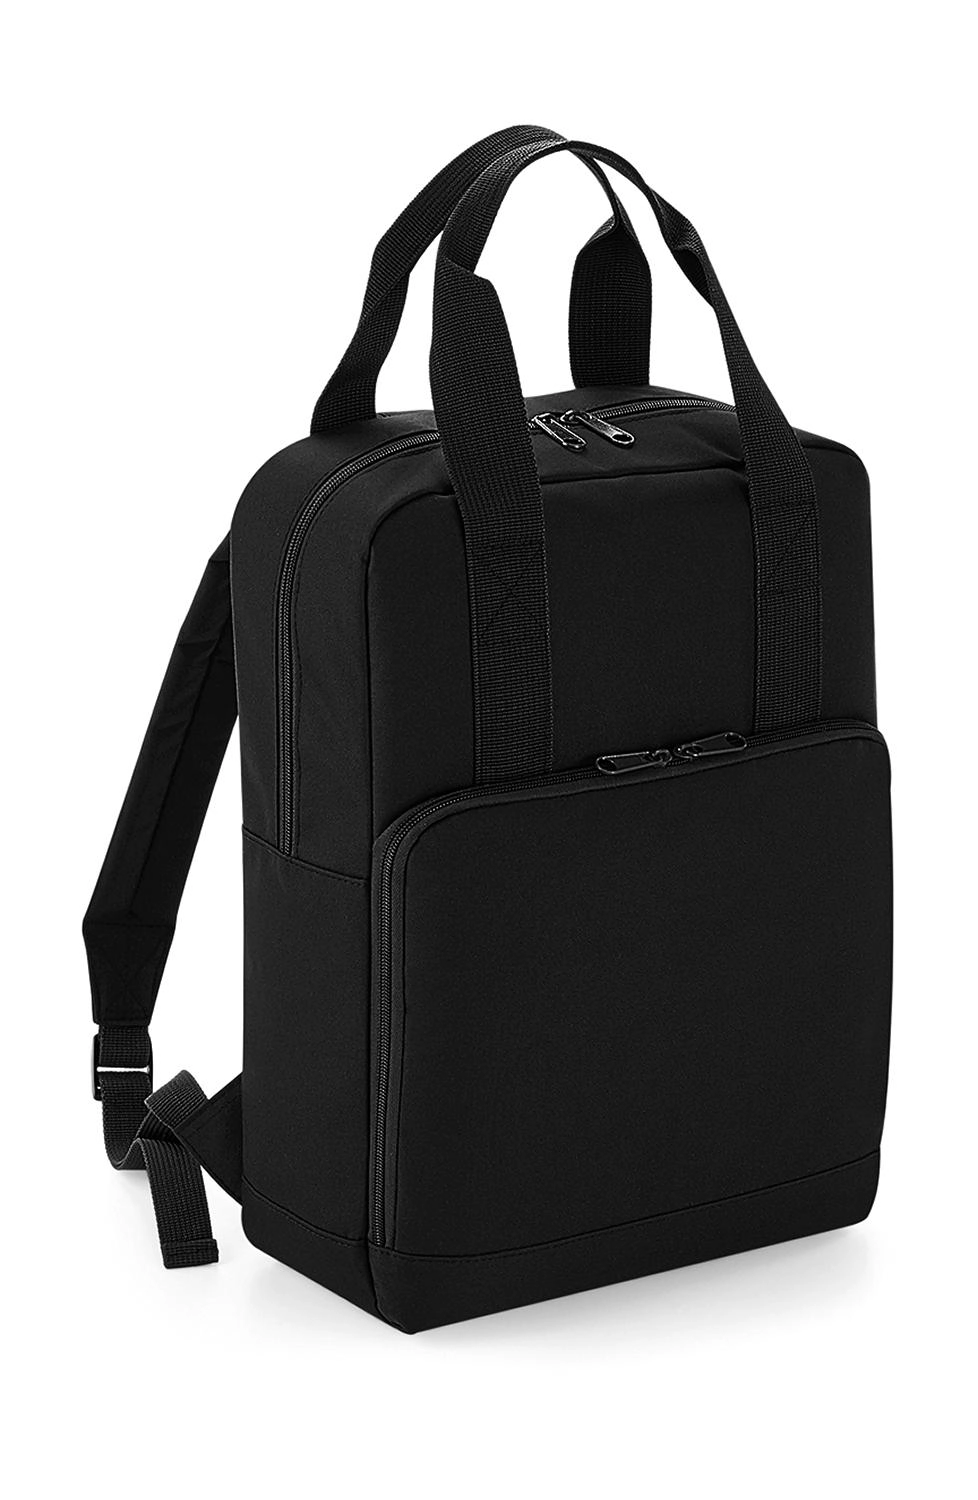 Twin Handle Backpack zum Besticken und Bedrucken in der Farbe Black mit Ihren Logo, Schriftzug oder Motiv.